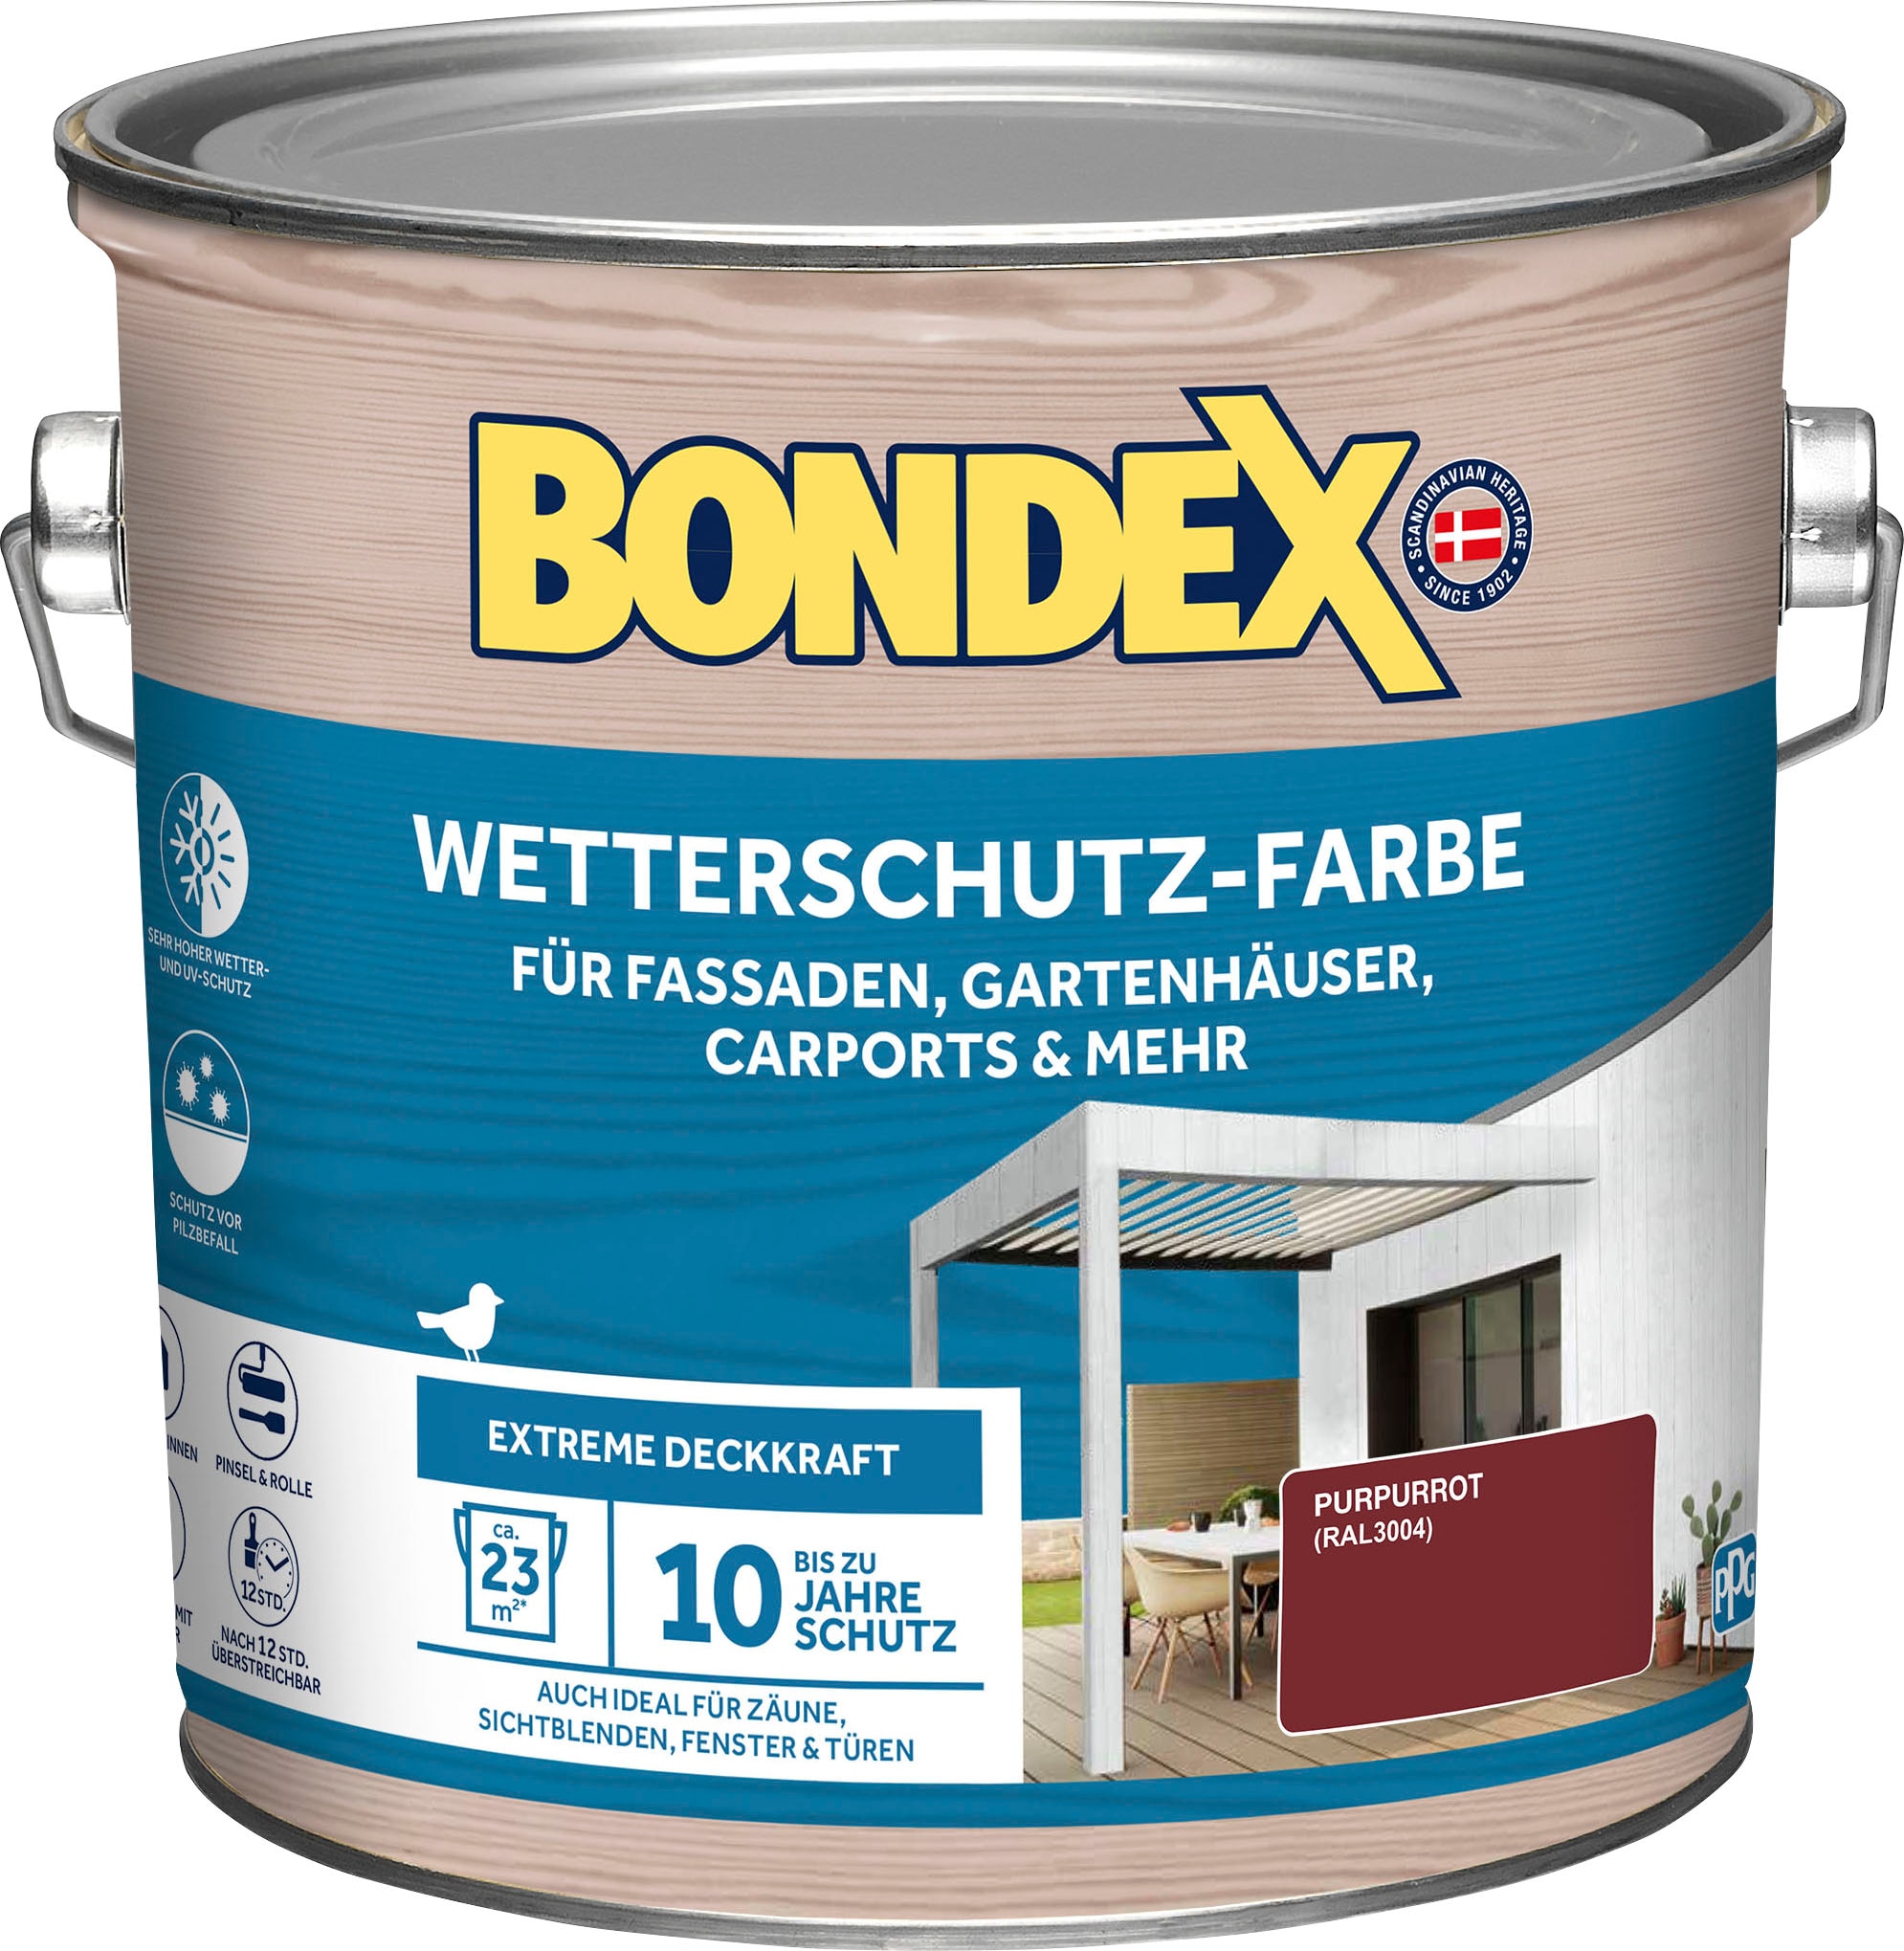 Bondex Wetterschutzfarbe online kaufen bei OTTO